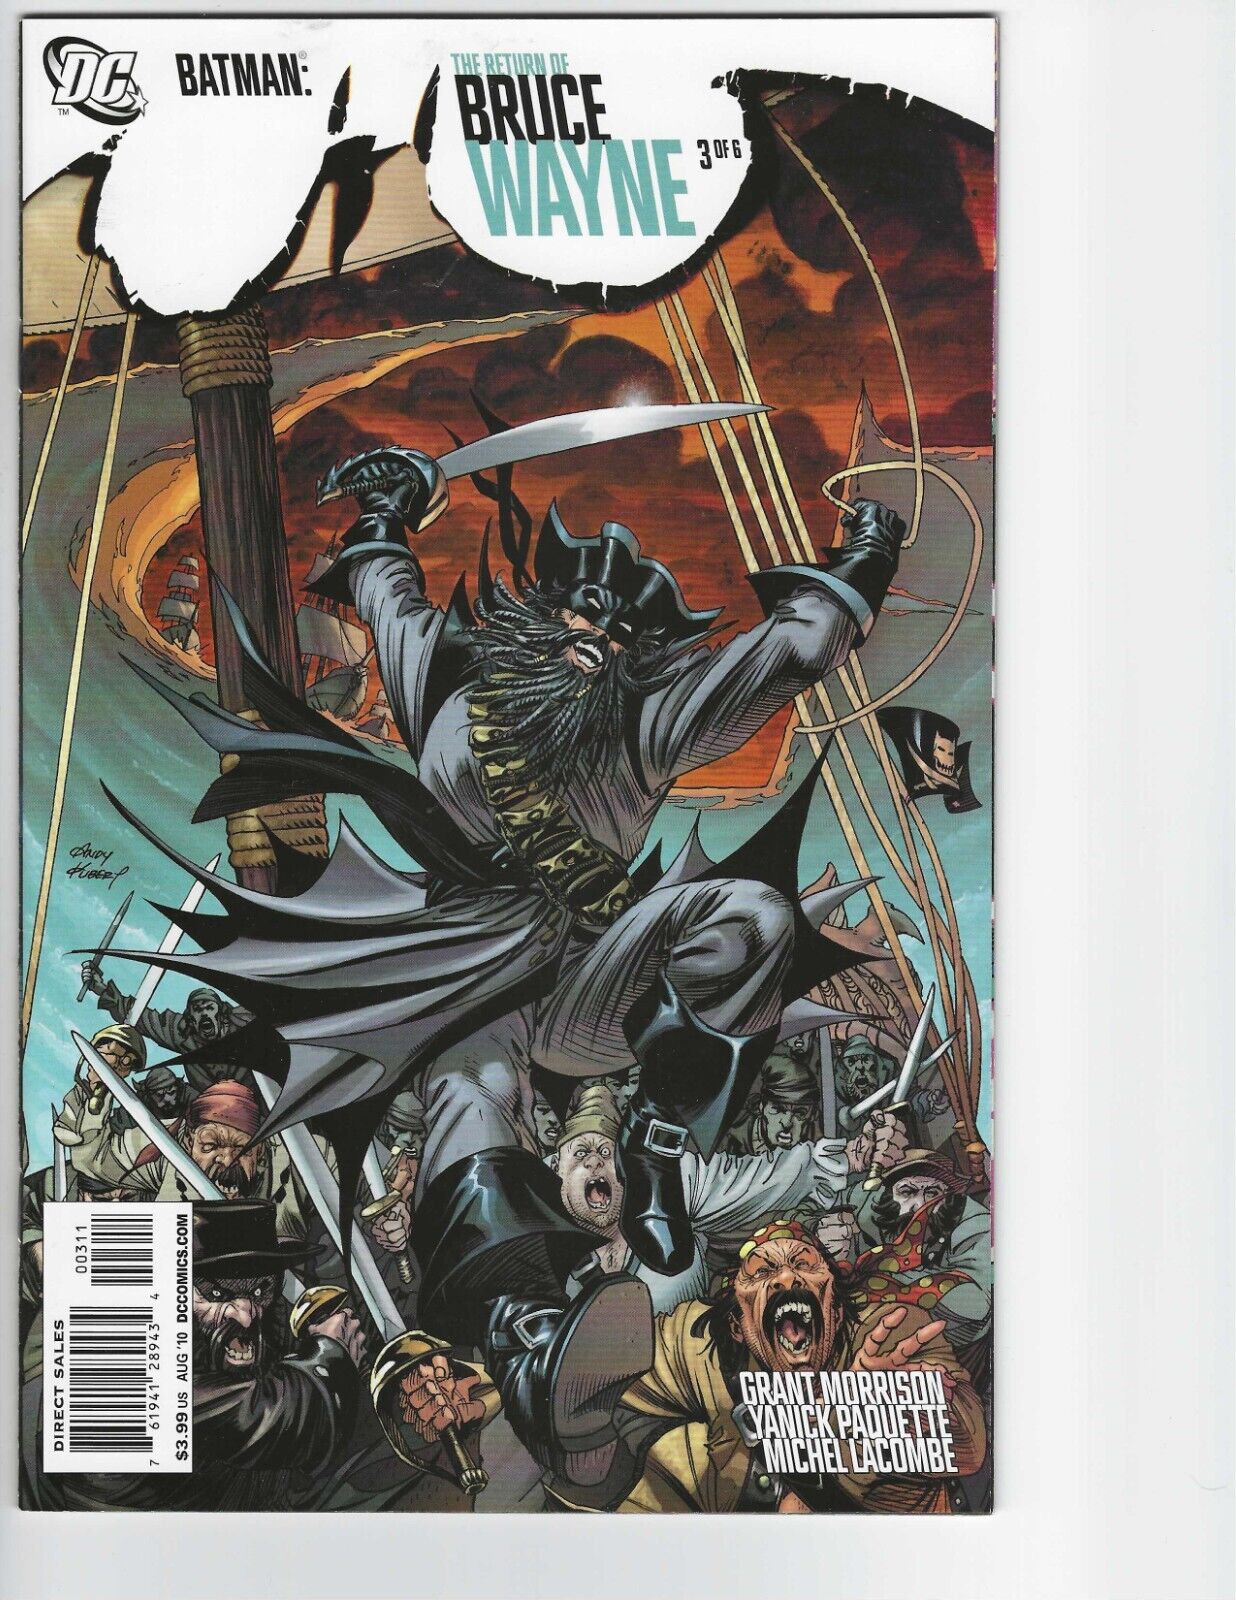 Batman: The Return of Bruce Wayne # 3, Grant Morrison, Andy Kubert Cover